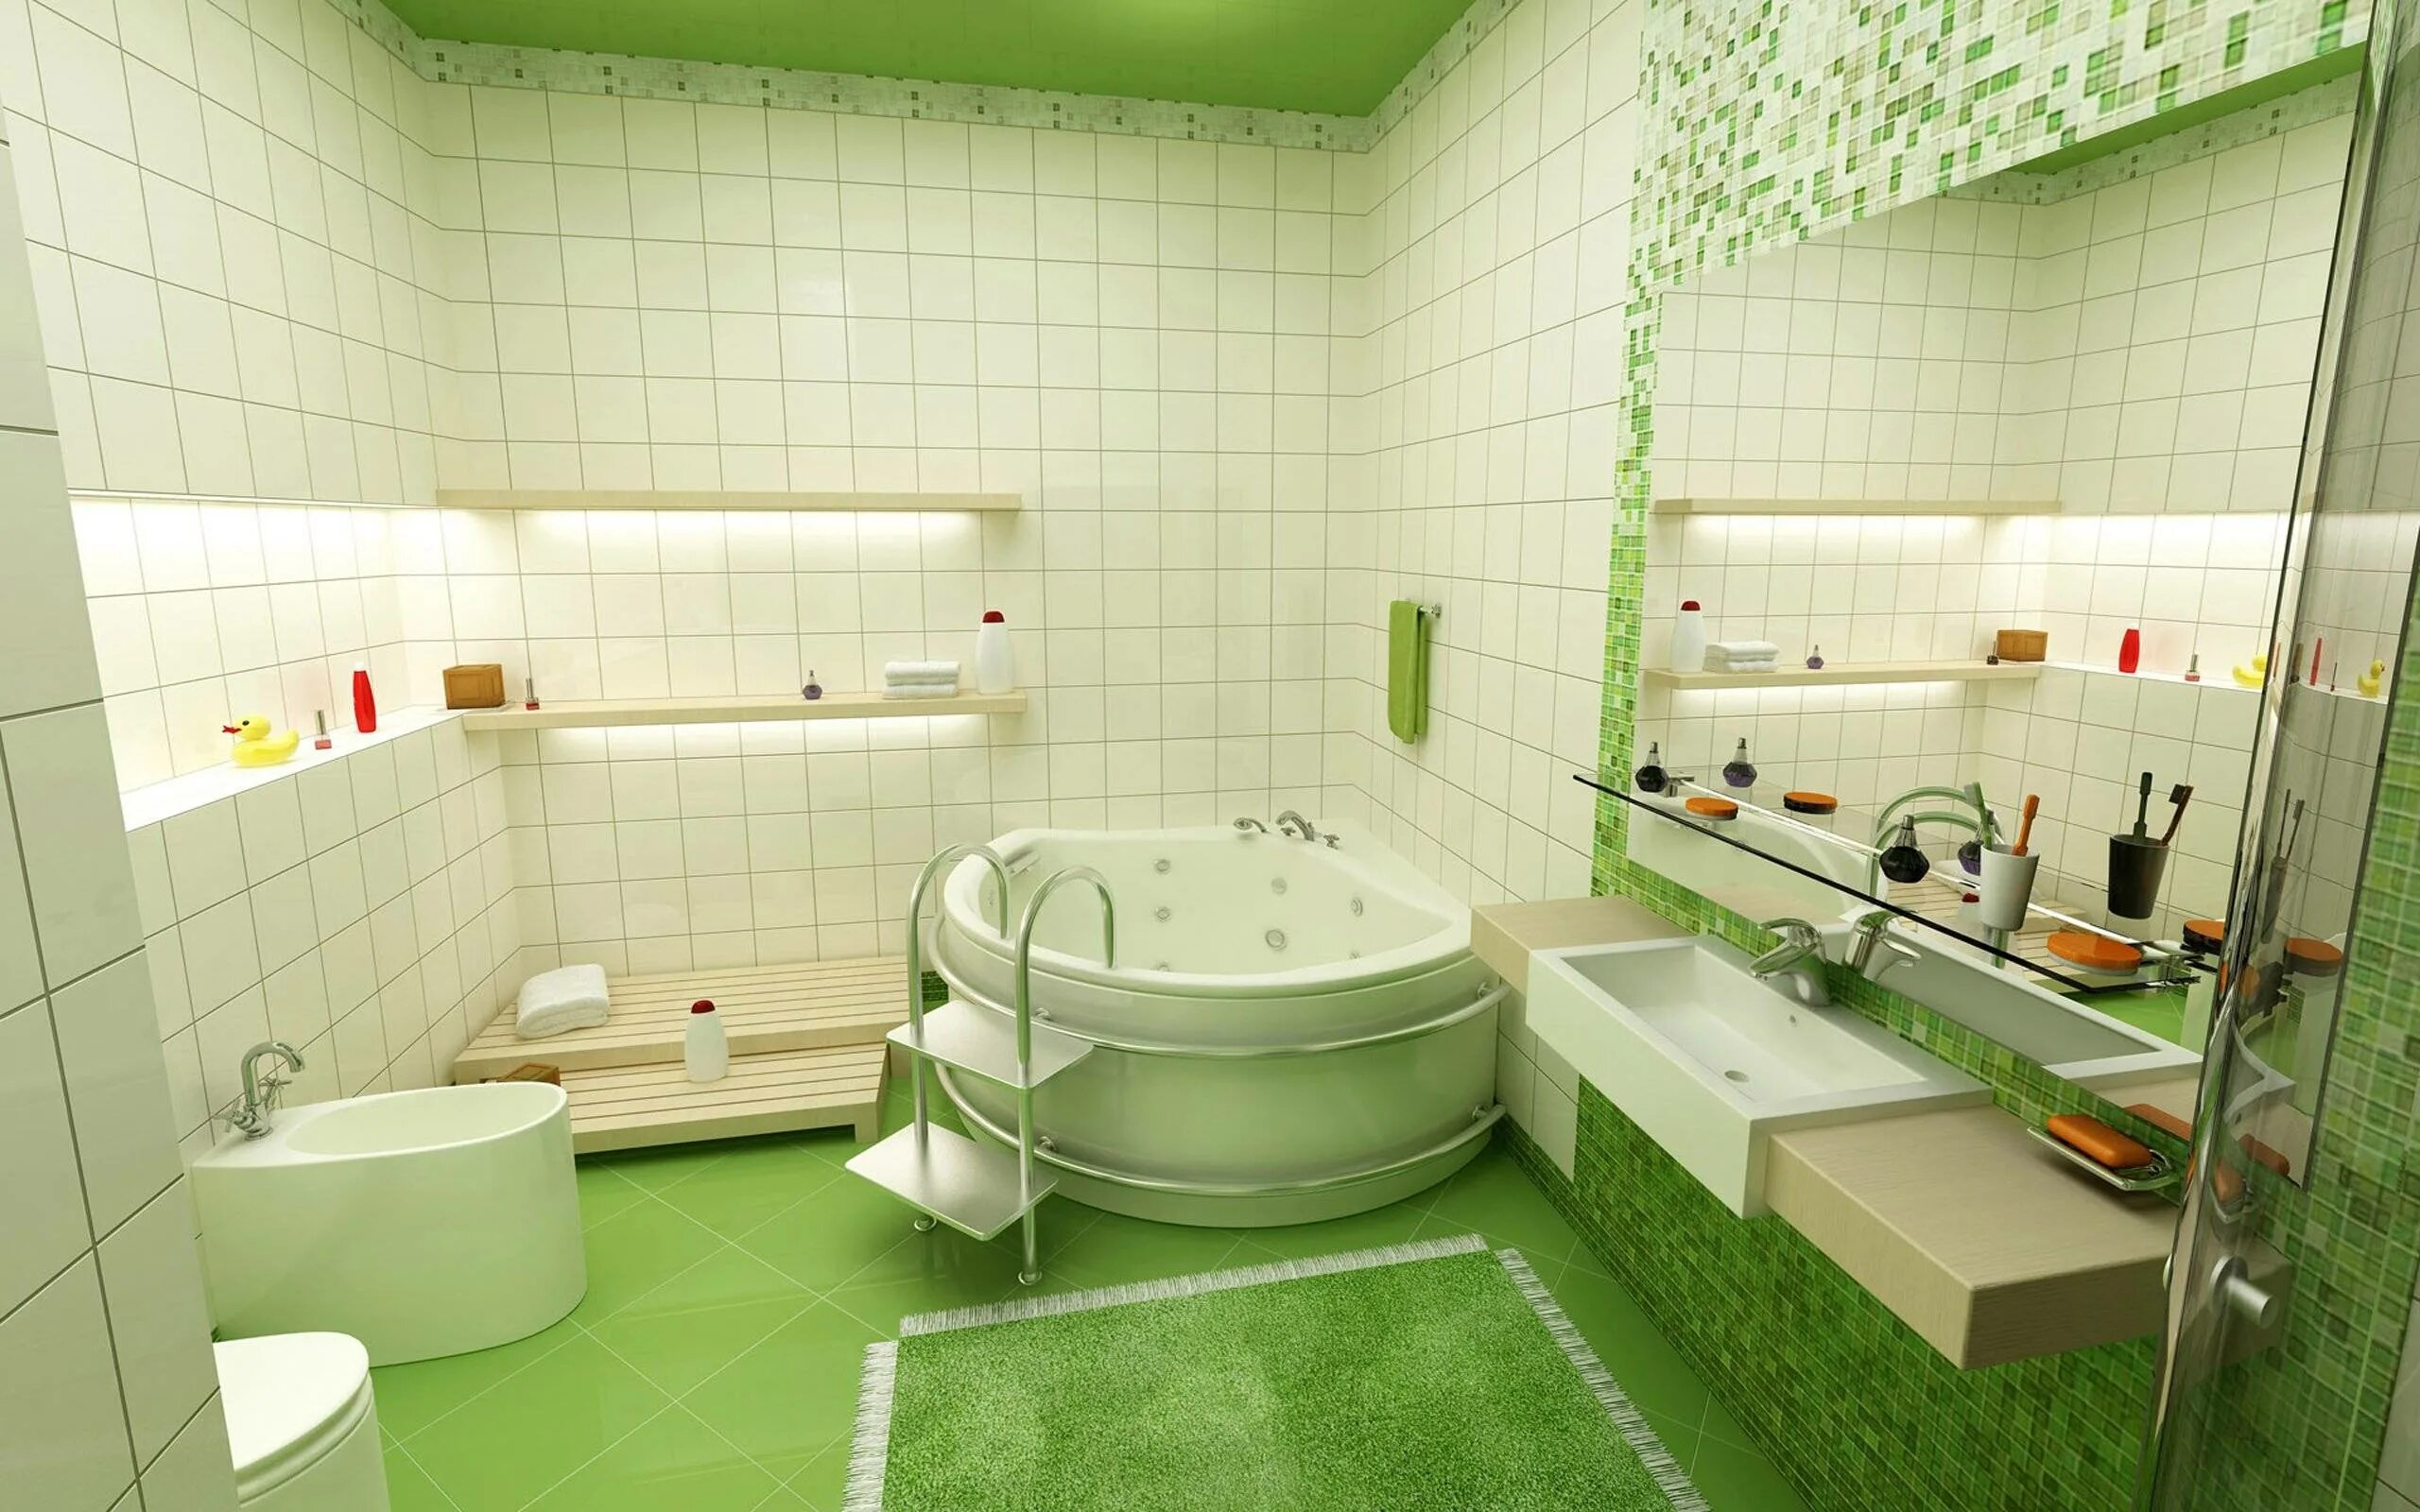 Ванная комната. Интерьер ванной. Ванная в зеленых тонах. Плитка для ванной комнаты. Ремонт новой ванны